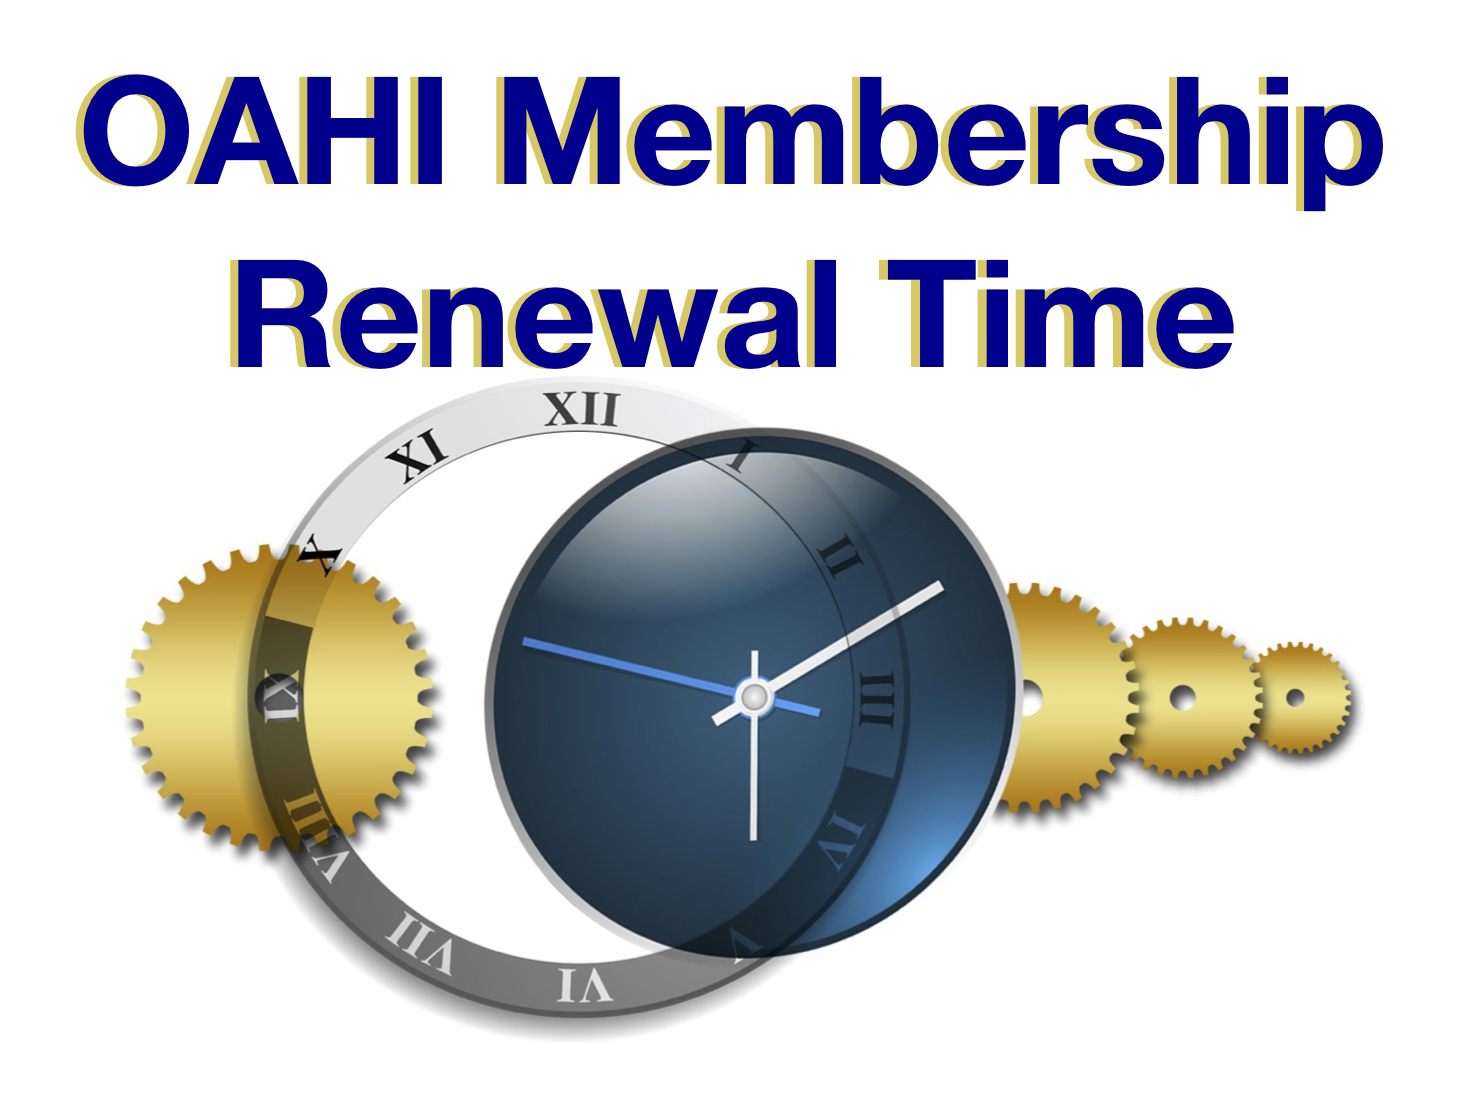   oahi_membership_renewal_3.jpg